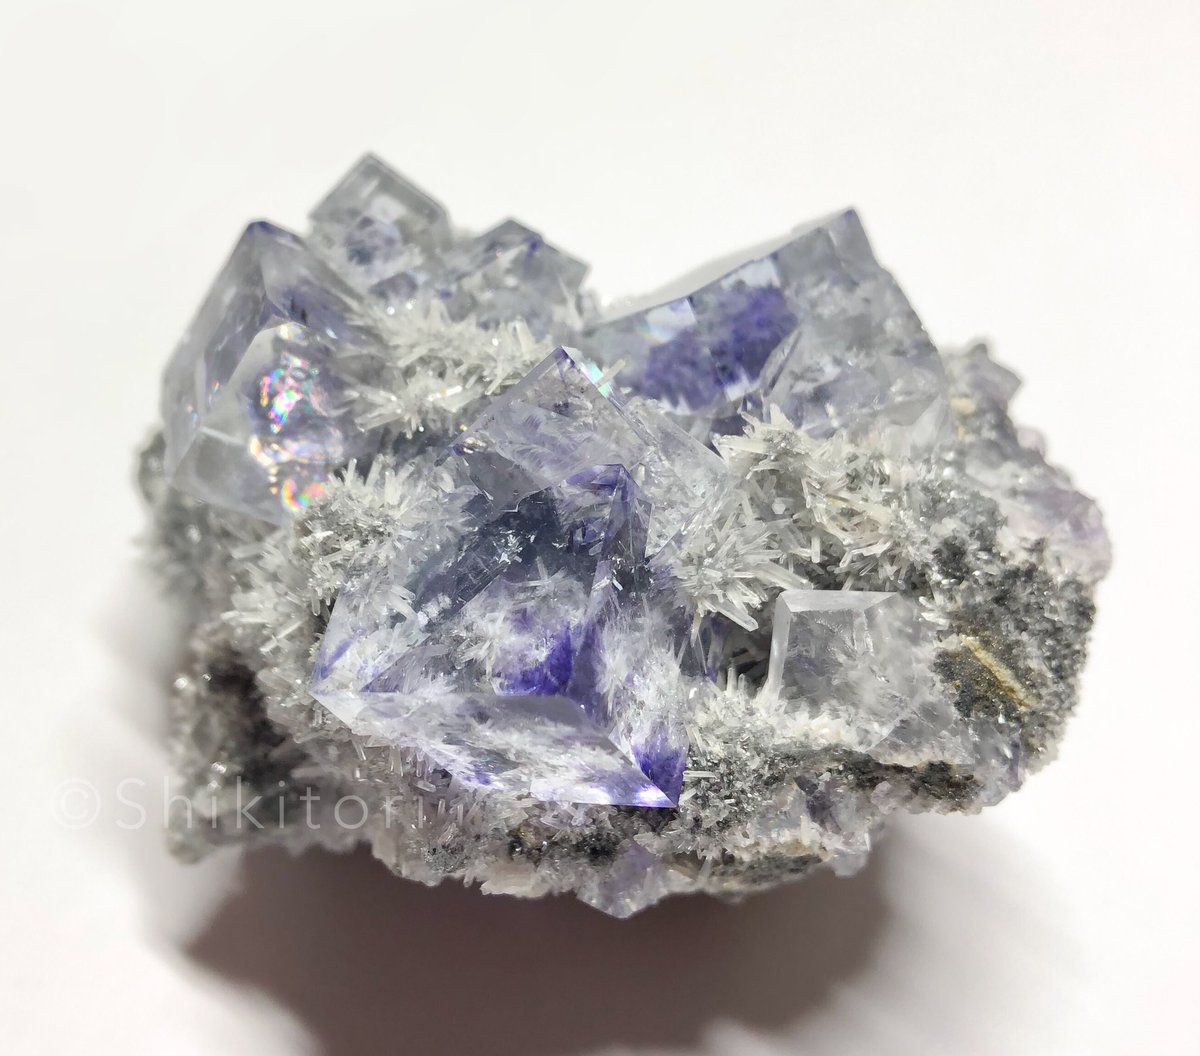 「#蛍石と水晶とっておきのフローライト 」|シキトリのイラスト